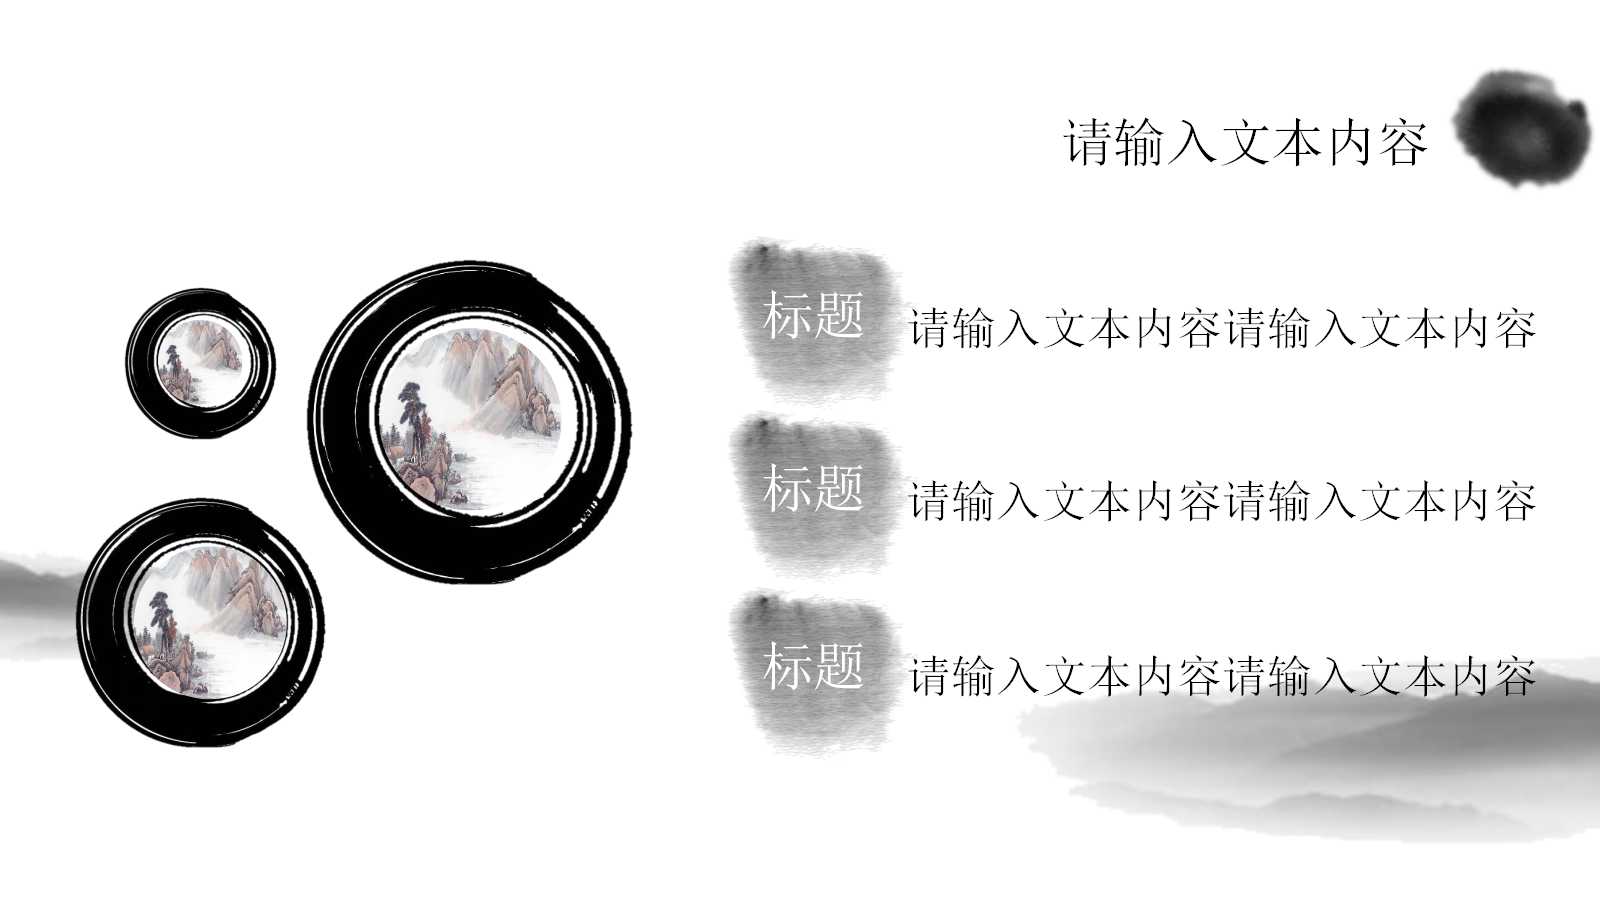 古典中国风幻灯片模板